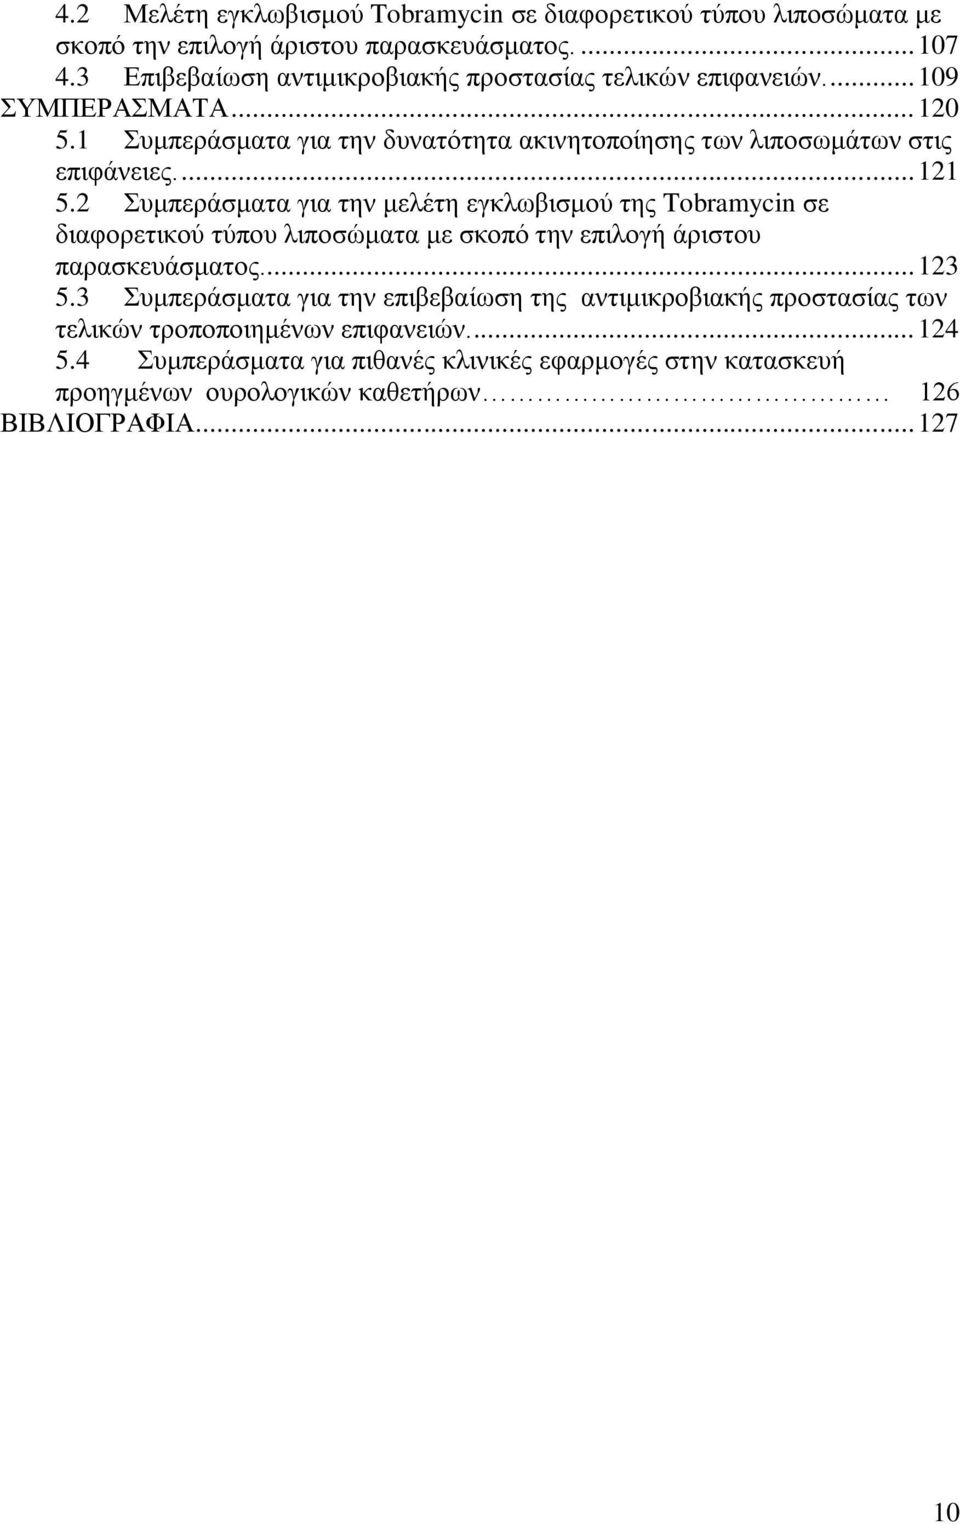 ... 121 5.2 Συμπεράσματα για την μελέτη εγκλωβισμού της Tobramycin σε διαφορετικού τύπου λιποσώματα με σκοπό την επιλογή άριστου παρασκευάσματος.... 123 5.